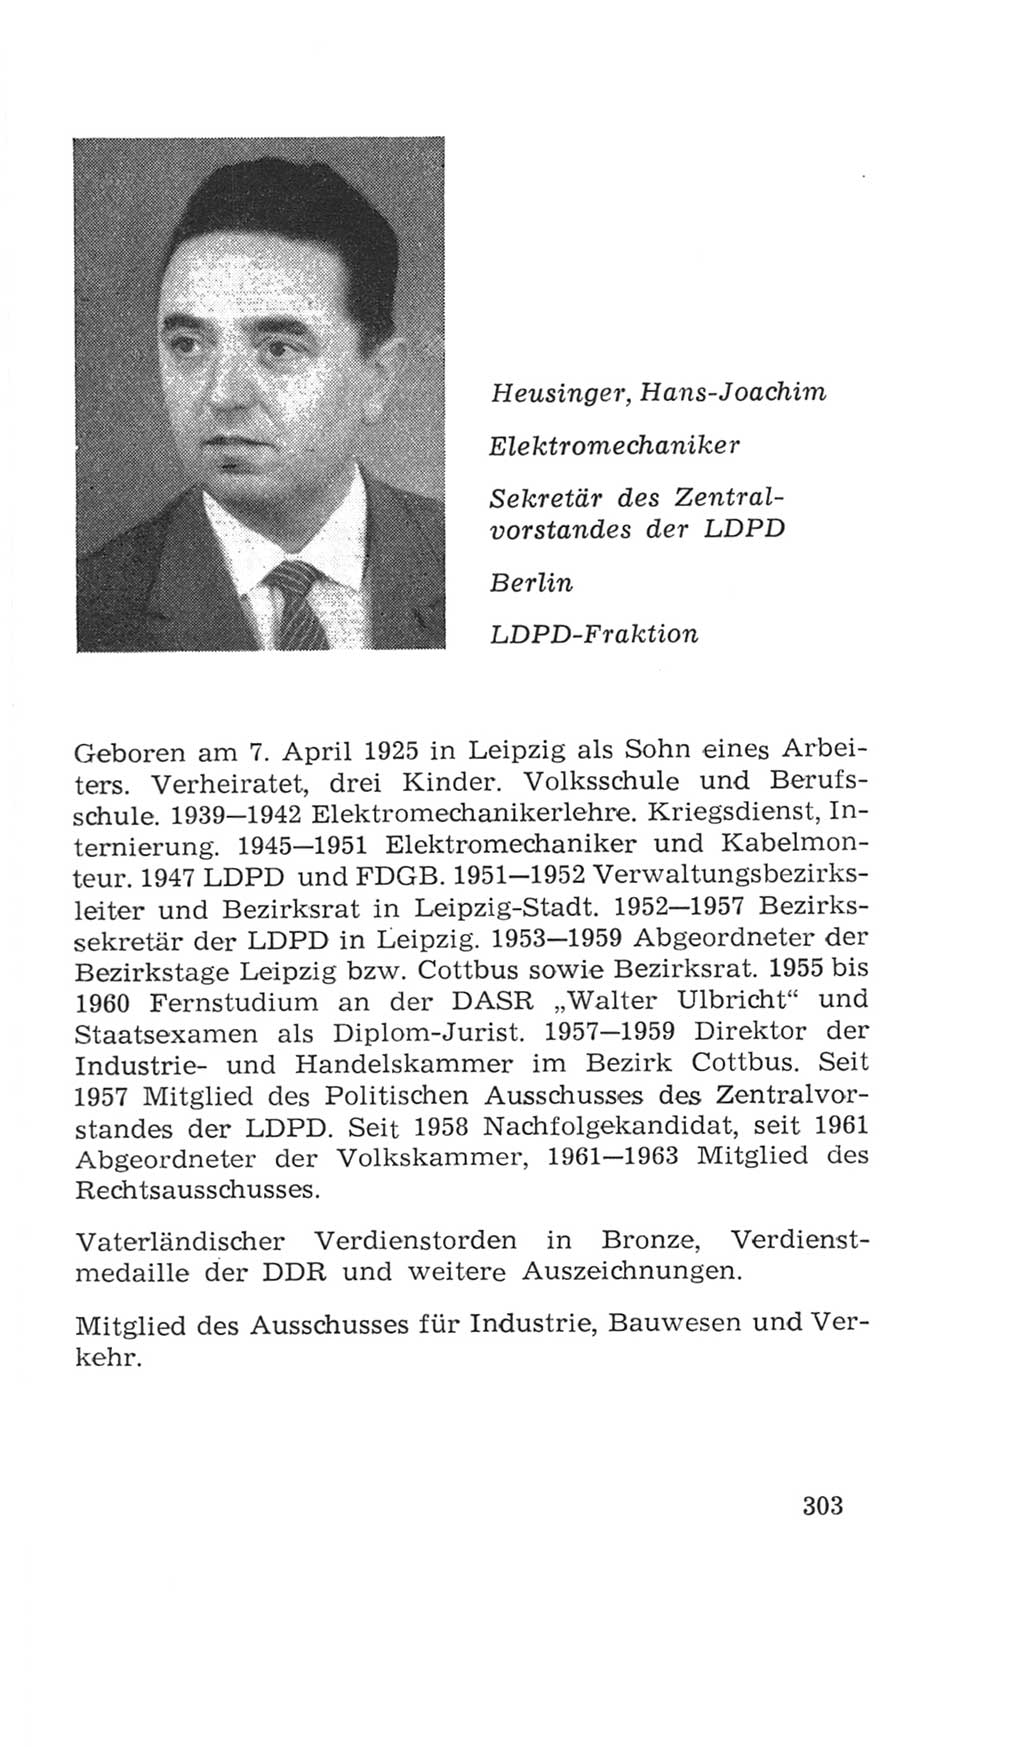 Volkskammer (VK) der Deutschen Demokratischen Republik (DDR), 4. Wahlperiode 1963-1967, Seite 303 (VK. DDR 4. WP. 1963-1967, S. 303)